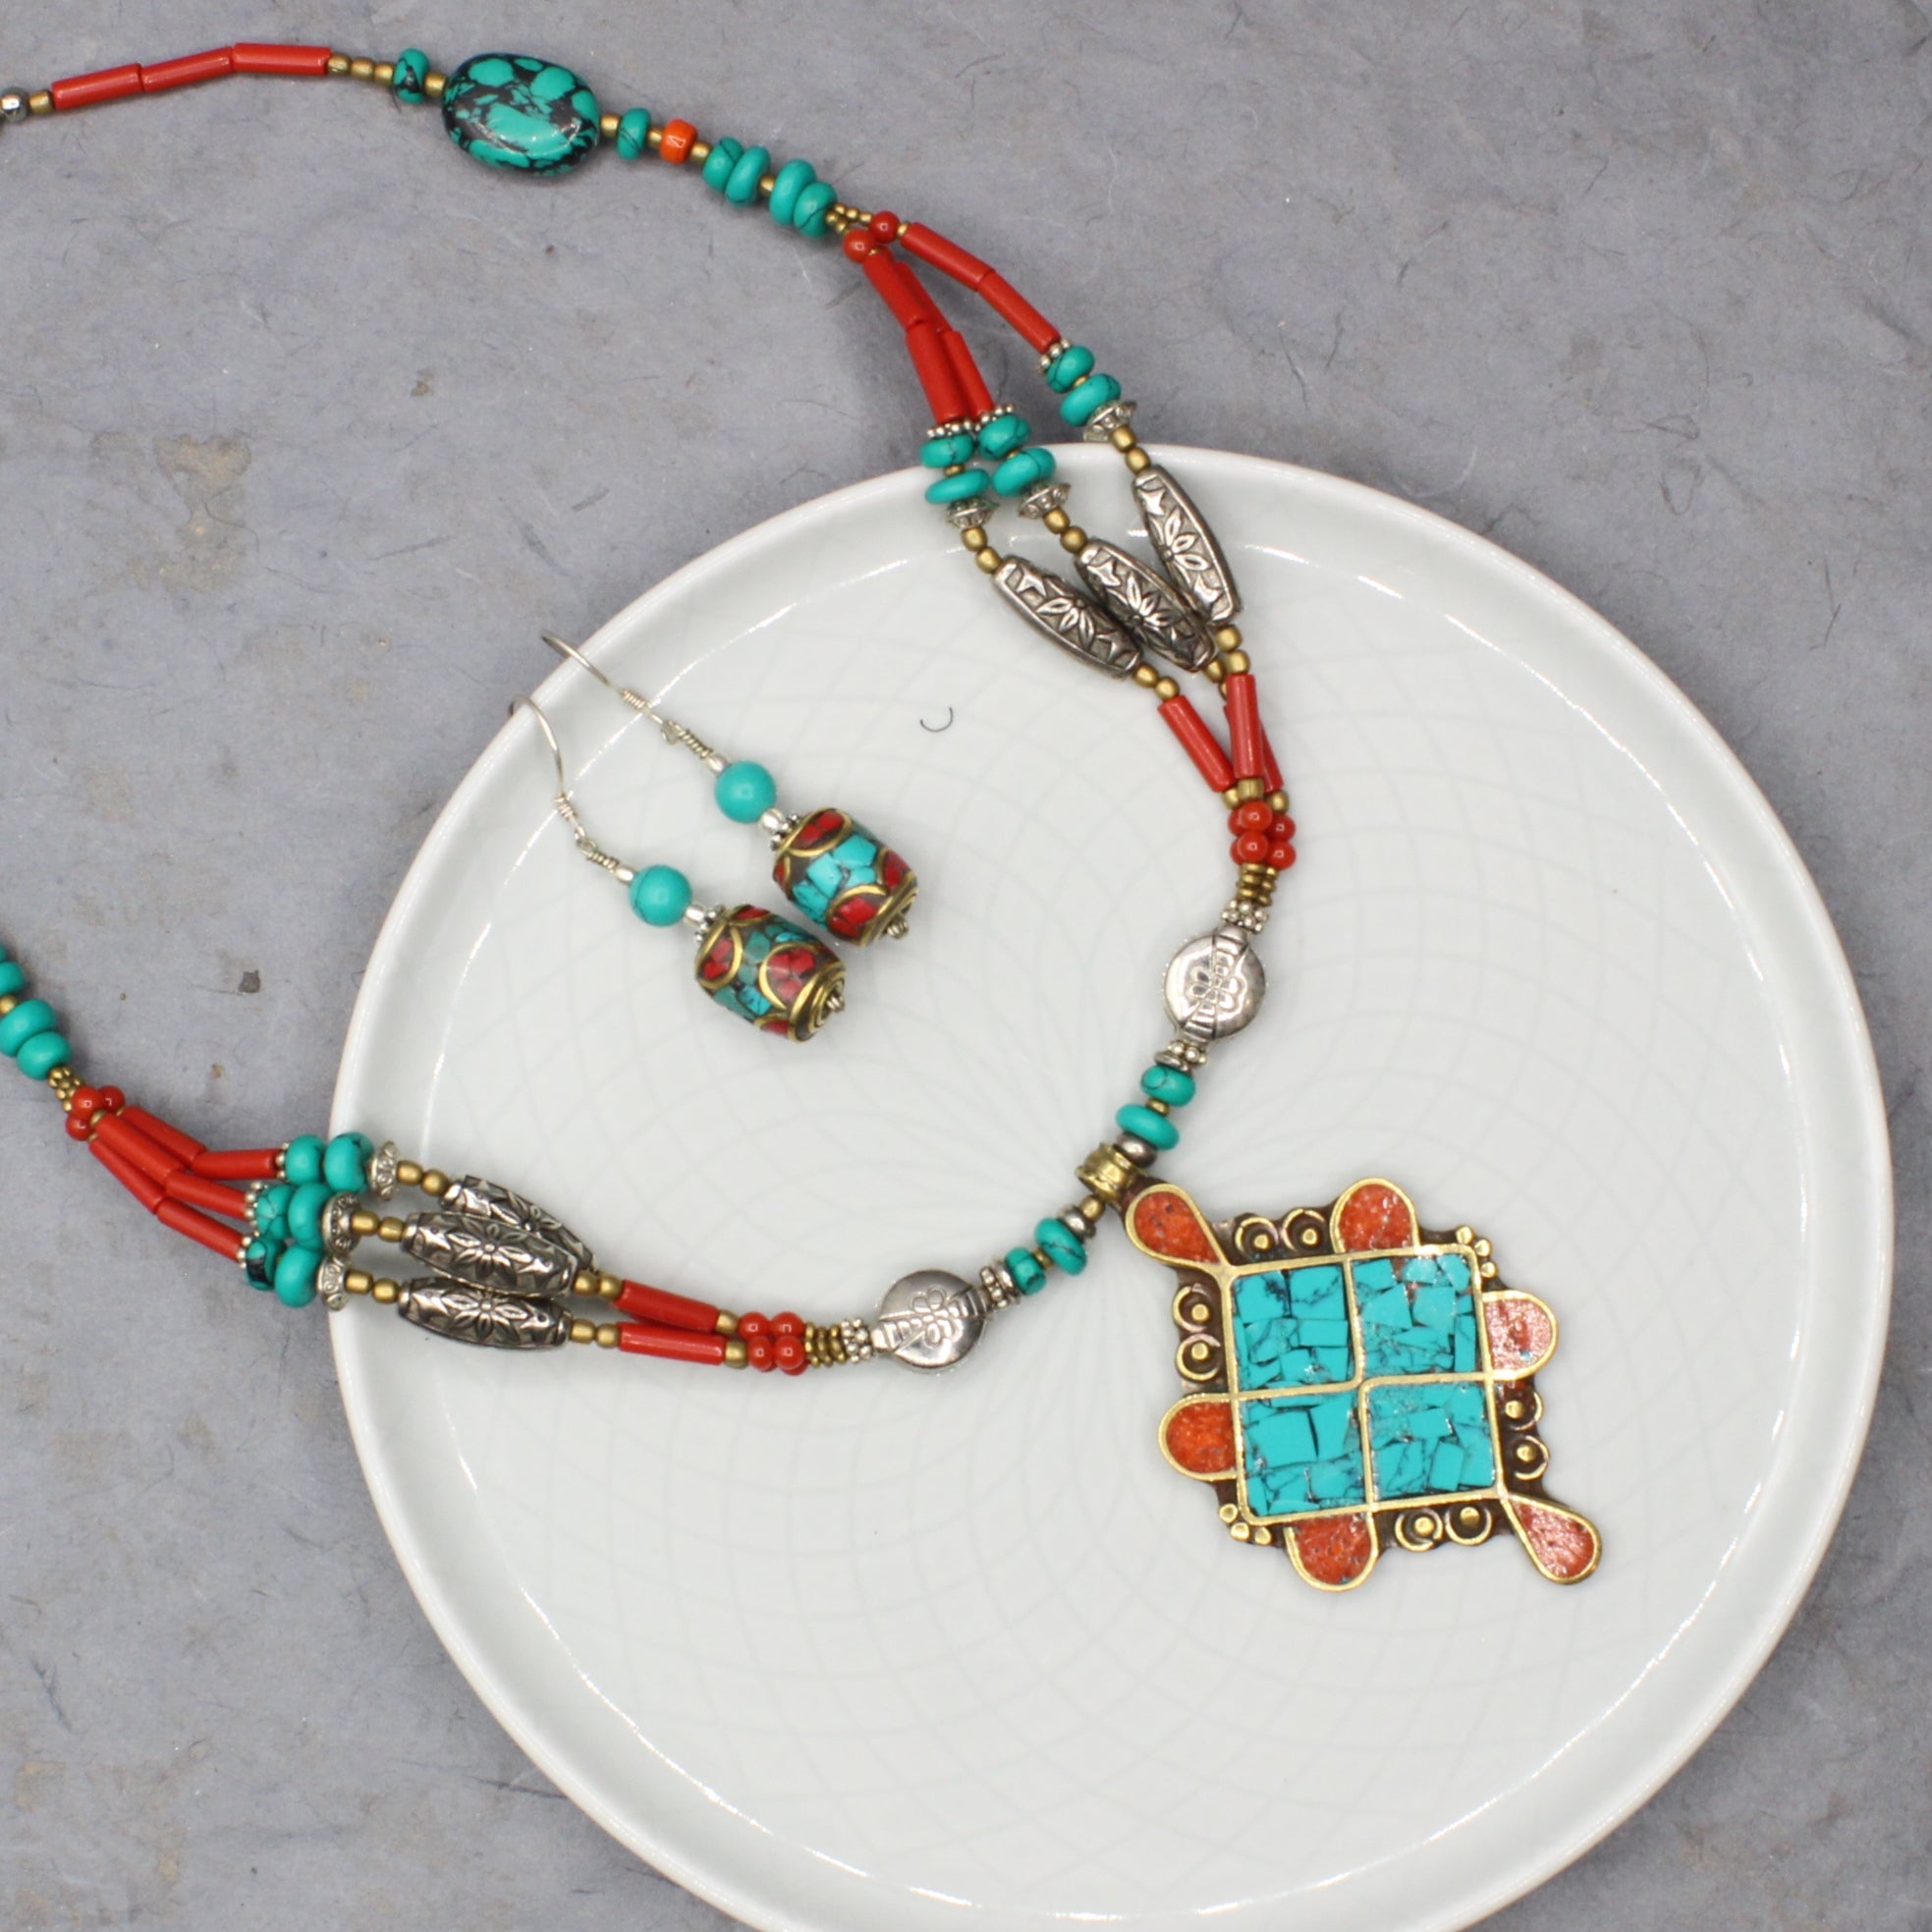 Turquoise & Coral Barrel Earrings with Turquoise Bead Earrings Tibet Gift Corner 